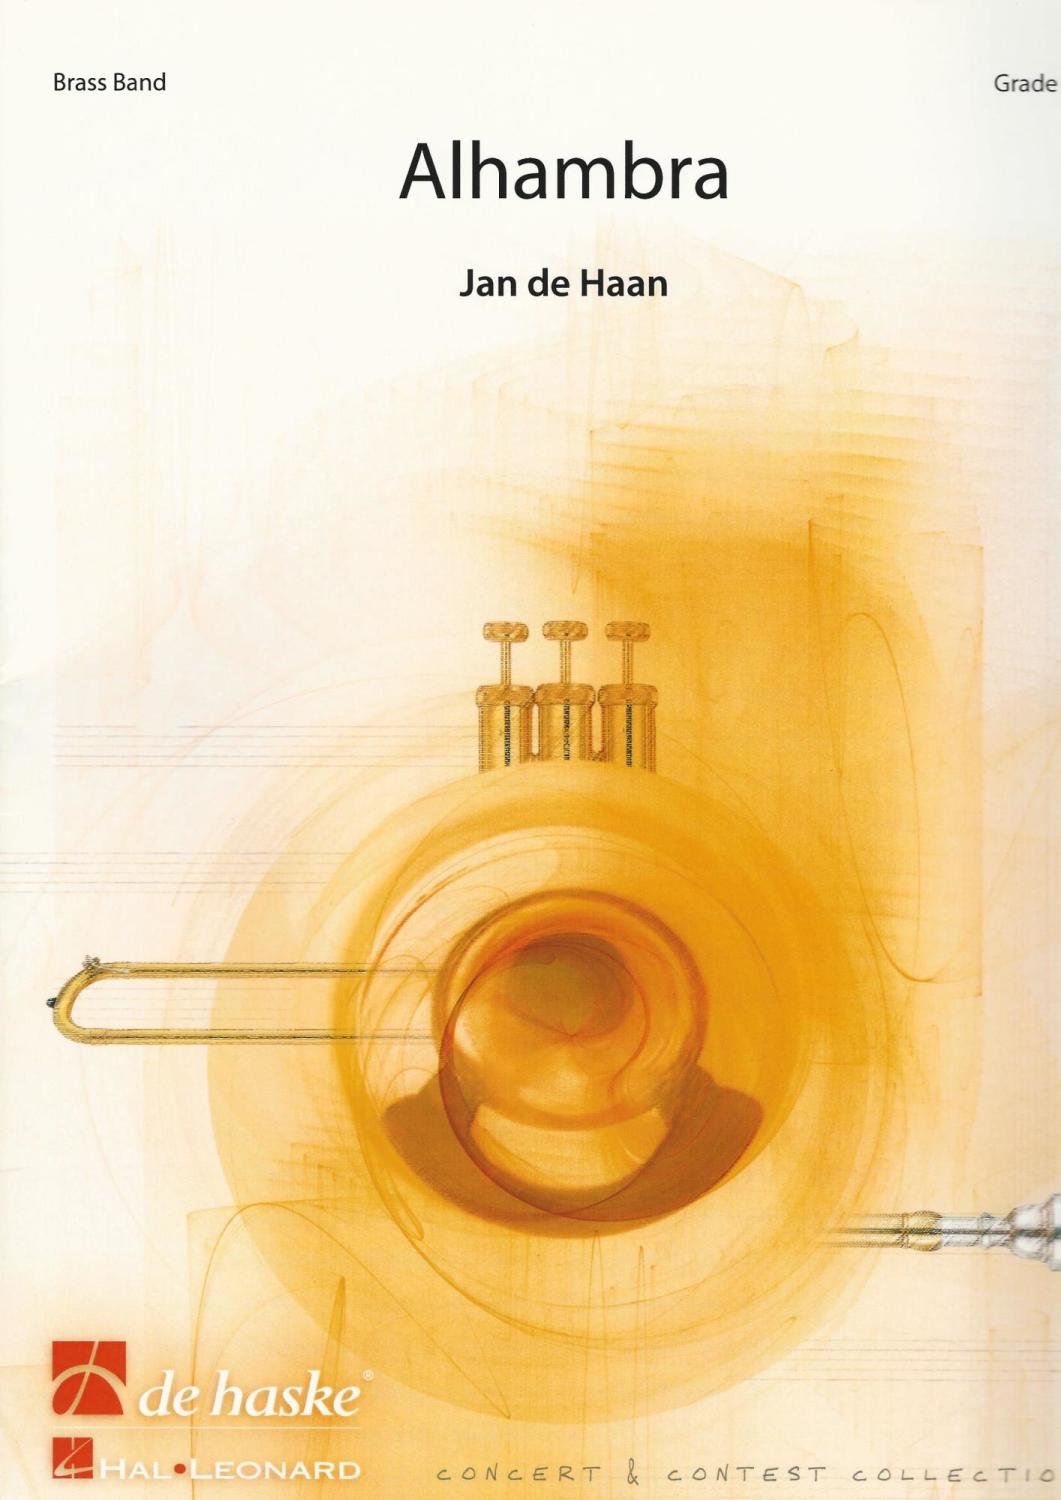 Alhambra for Brass Band - Jan de Haan